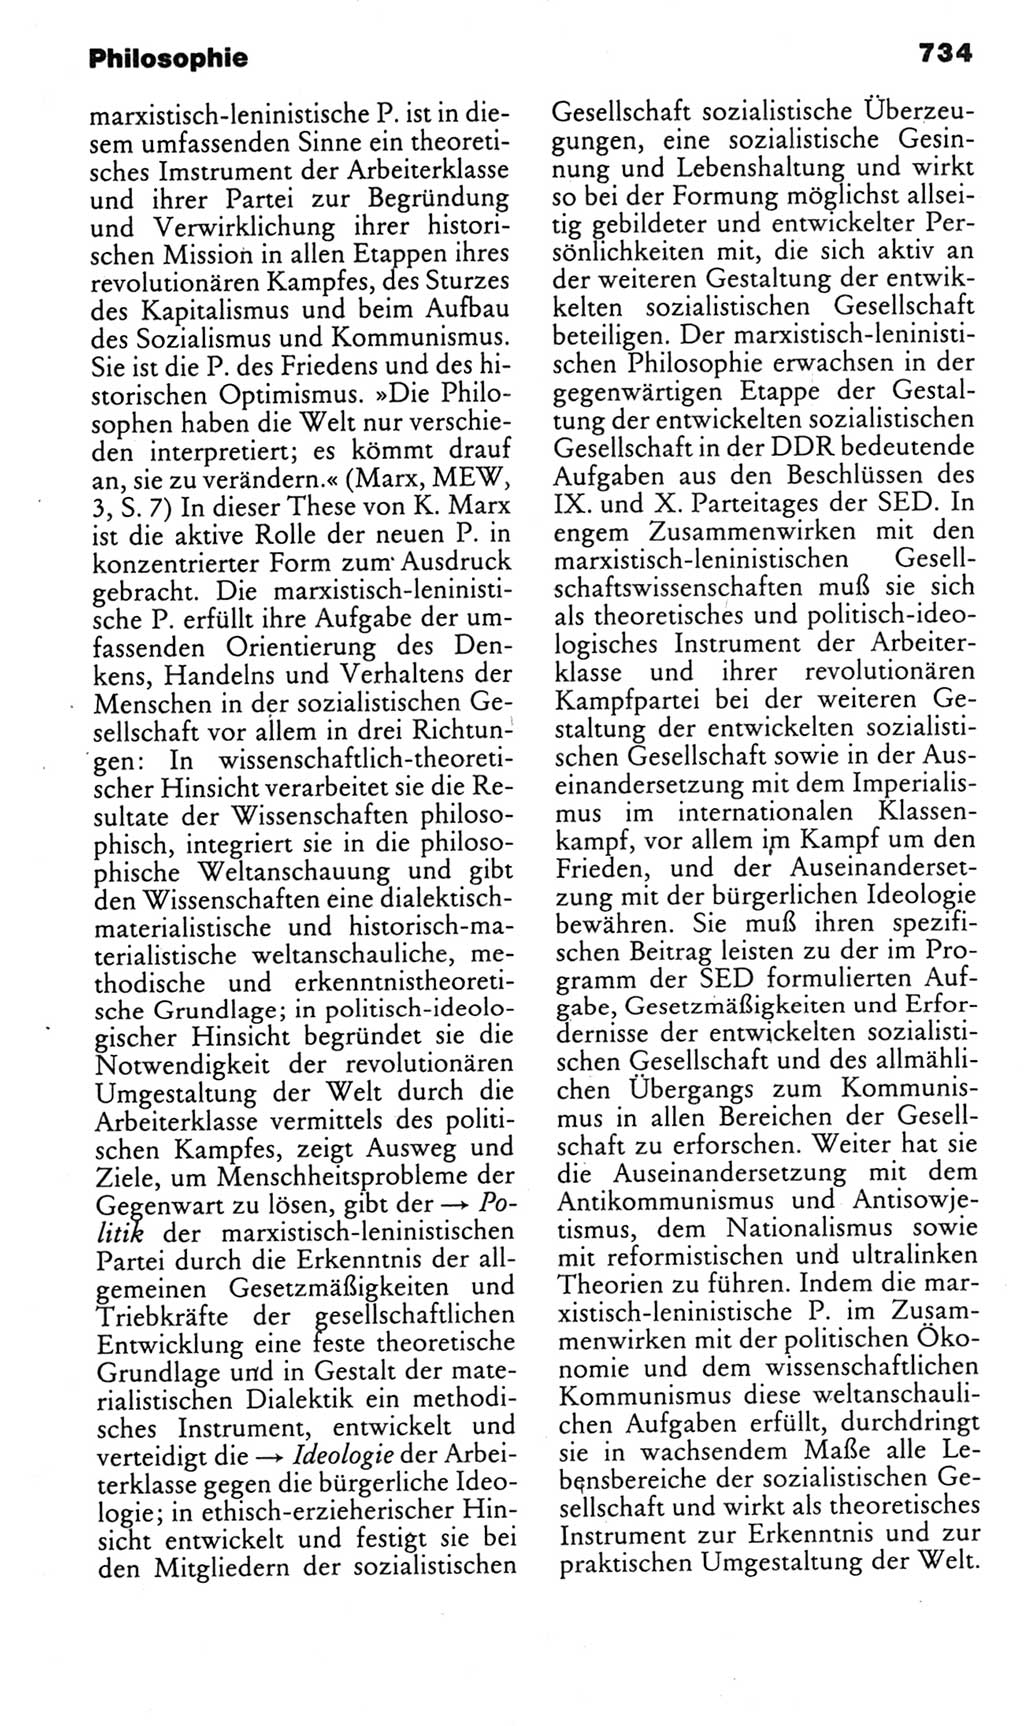 Kleines politisches Wörterbuch [Deutsche Demokratische Republik (DDR)] 1985, Seite 734 (Kl. pol. Wb. DDR 1985, S. 734)